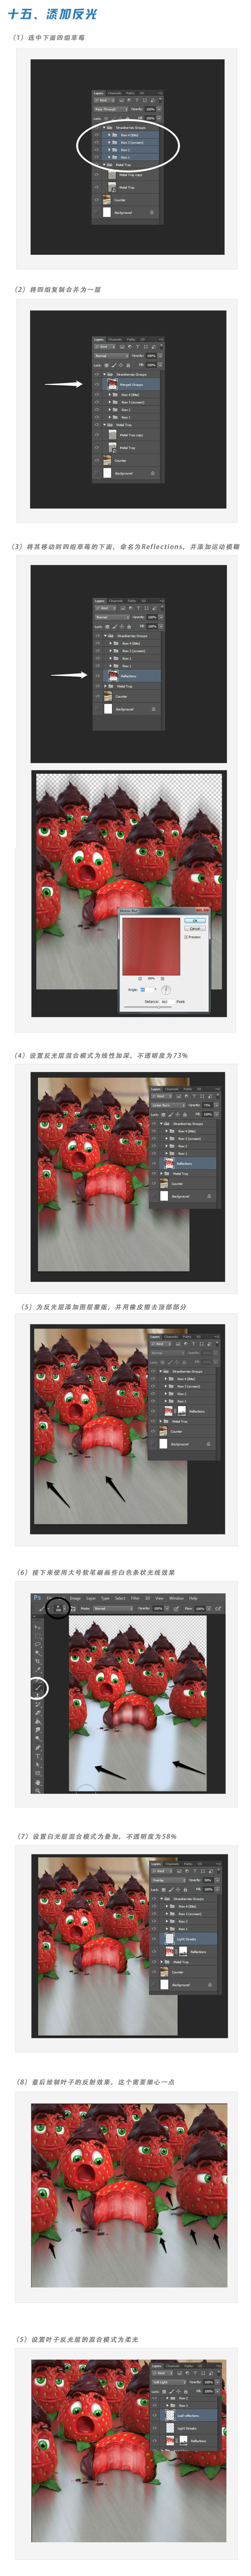 Photoshop合成超酷的3D草莓巧克力甜点,PS教程,图老师教程网